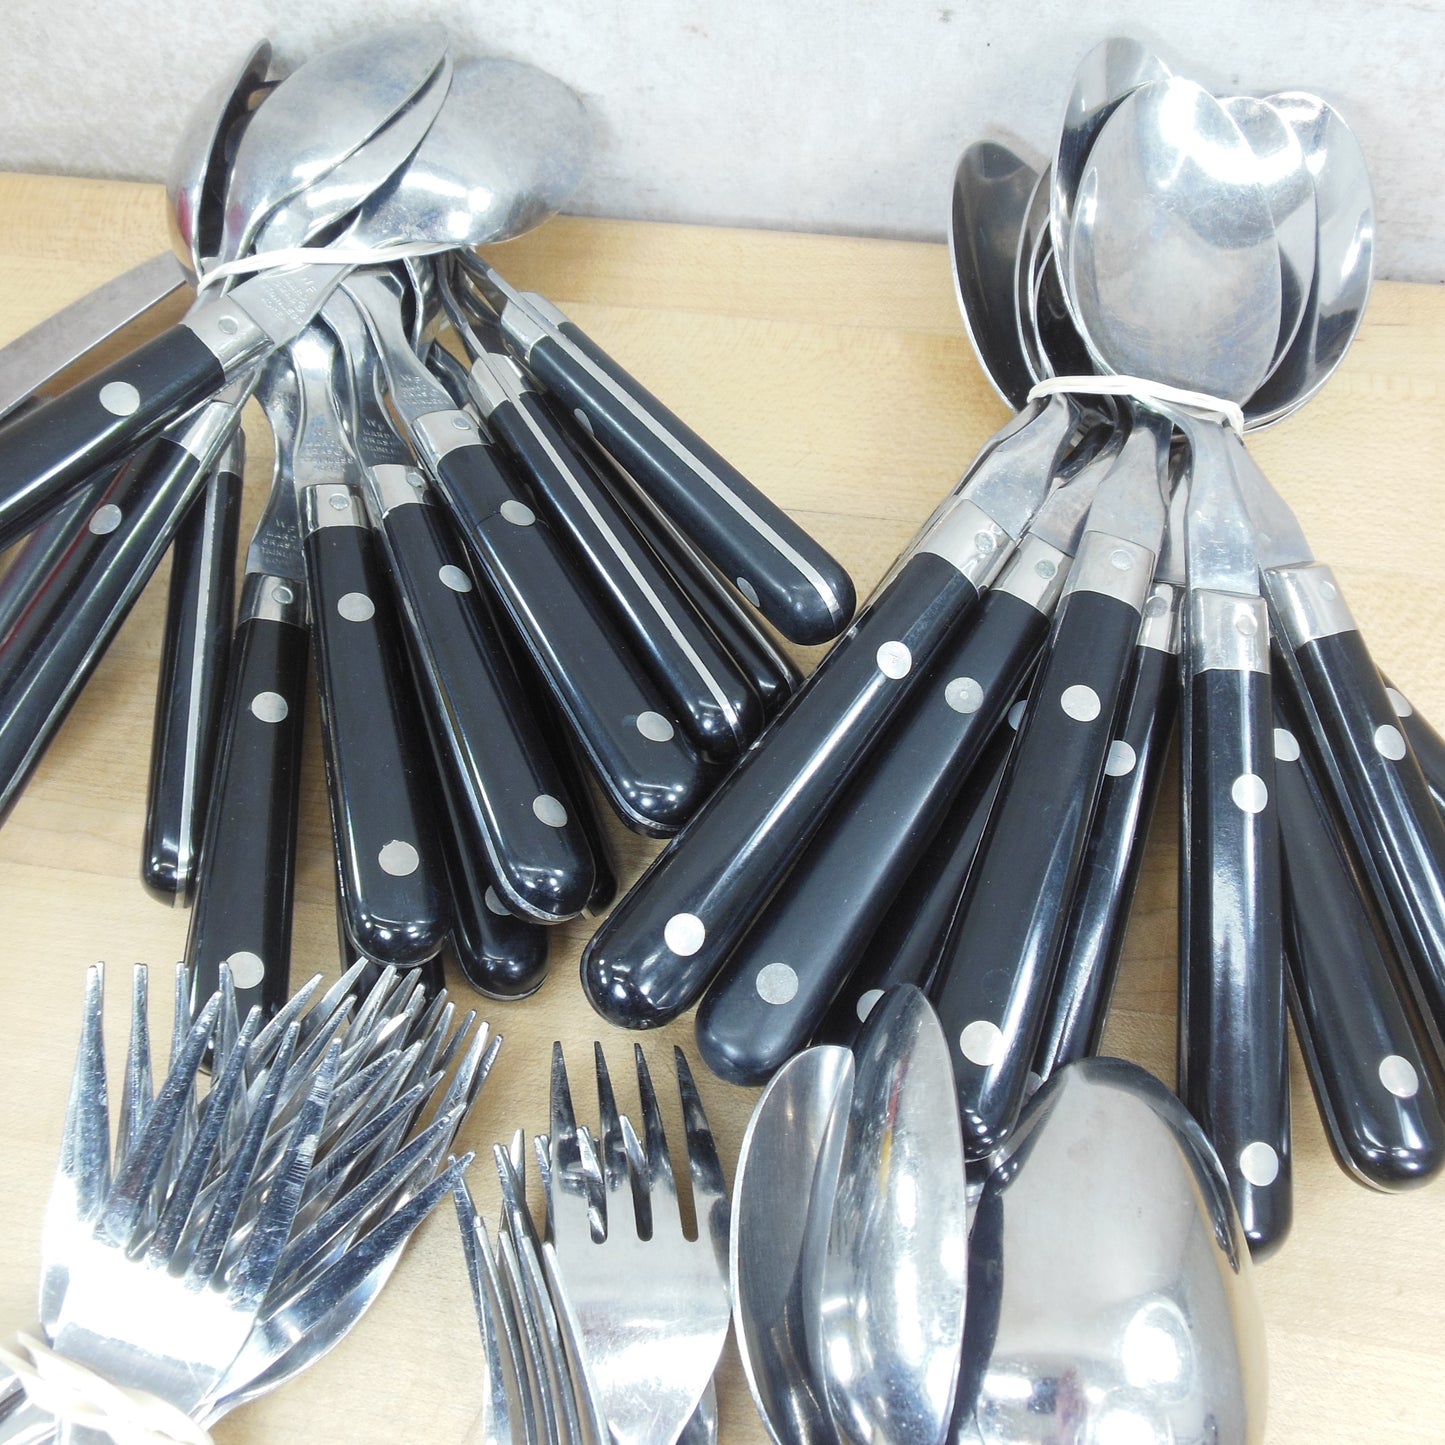 Washington Forge Mardi Gras Black Stainless Flatware Set 66 Pieces Spoon Fork